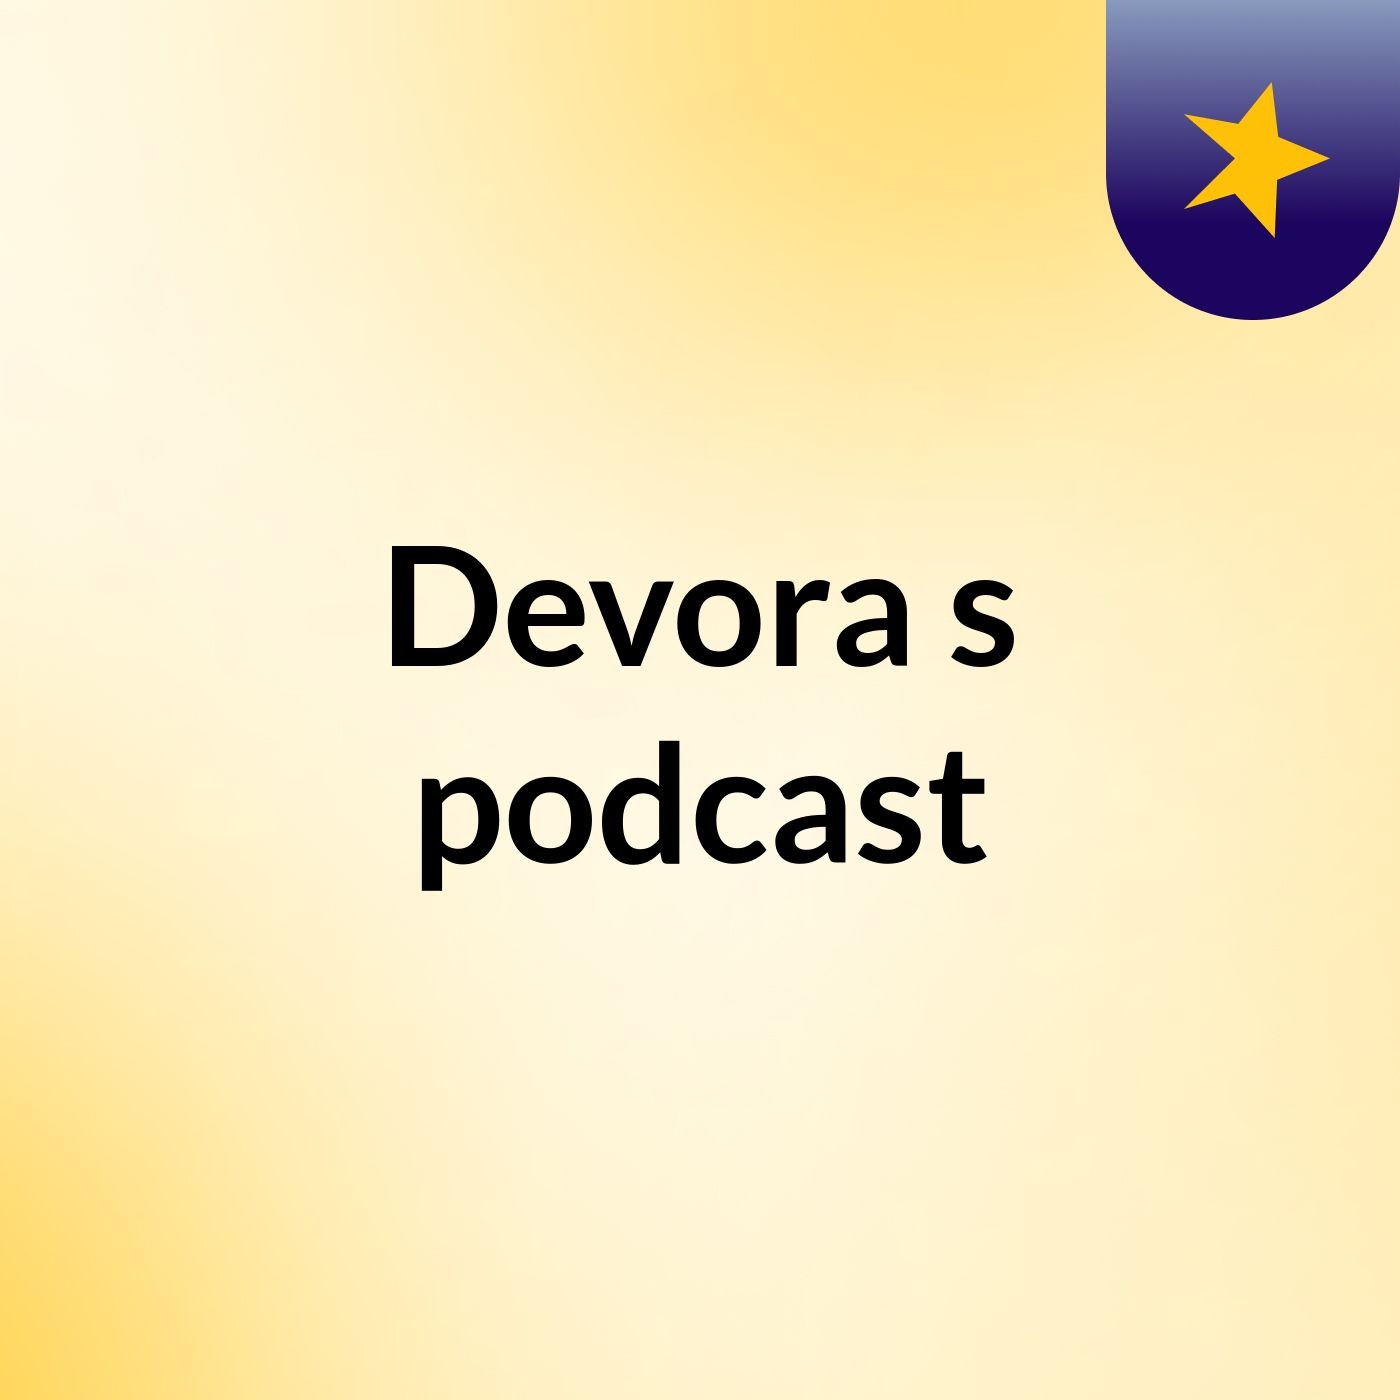 Devora's podcast